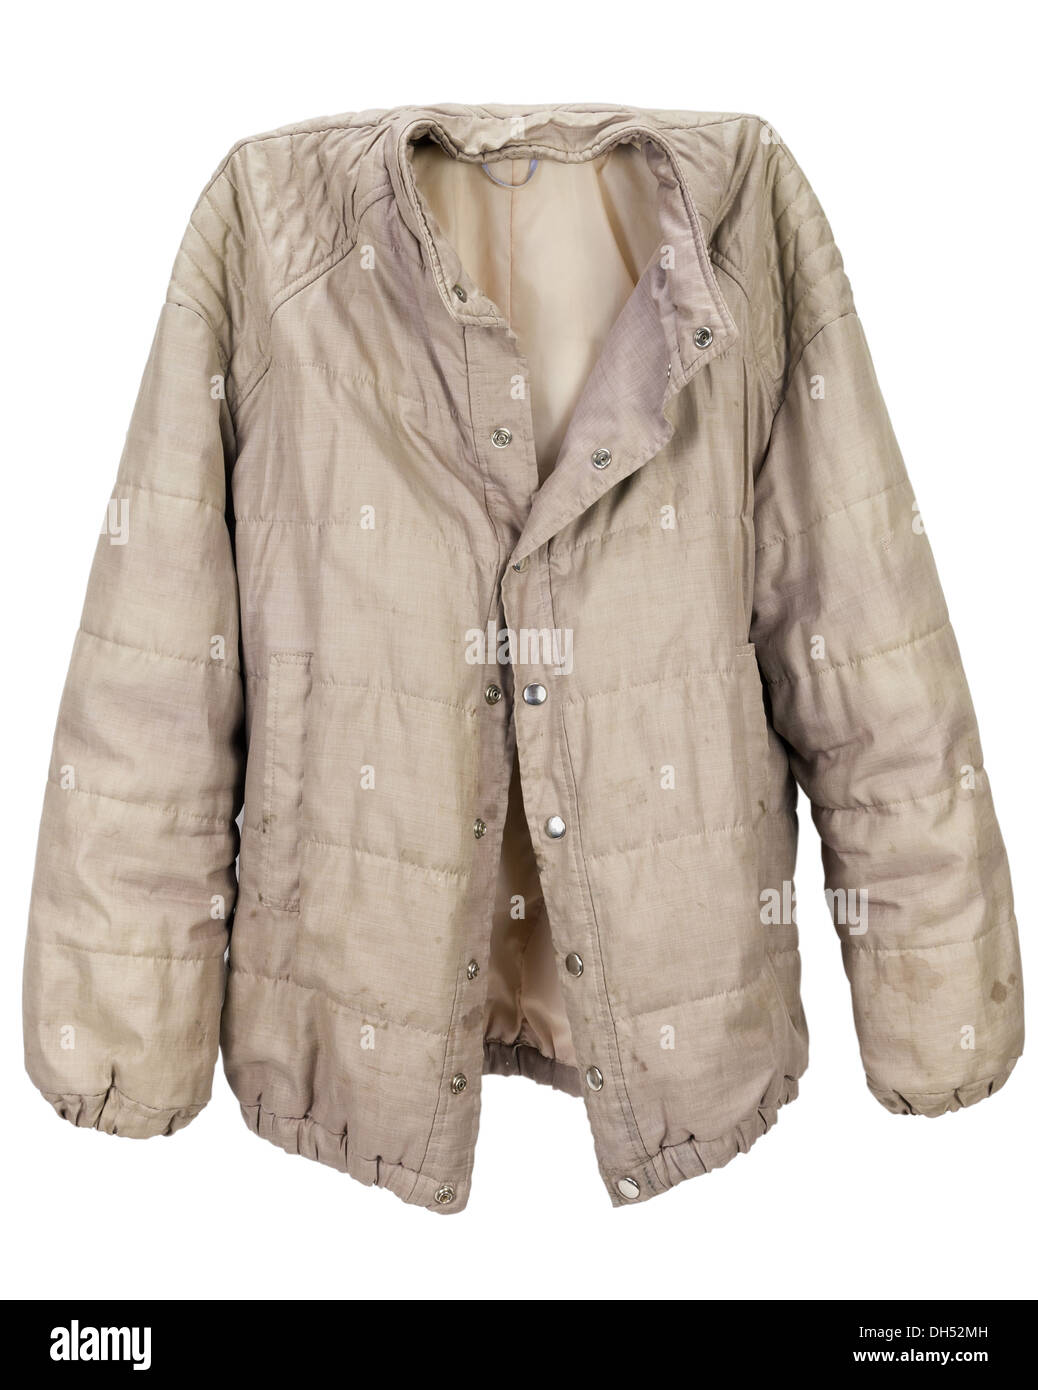 nylon man's jacket Stock Photo